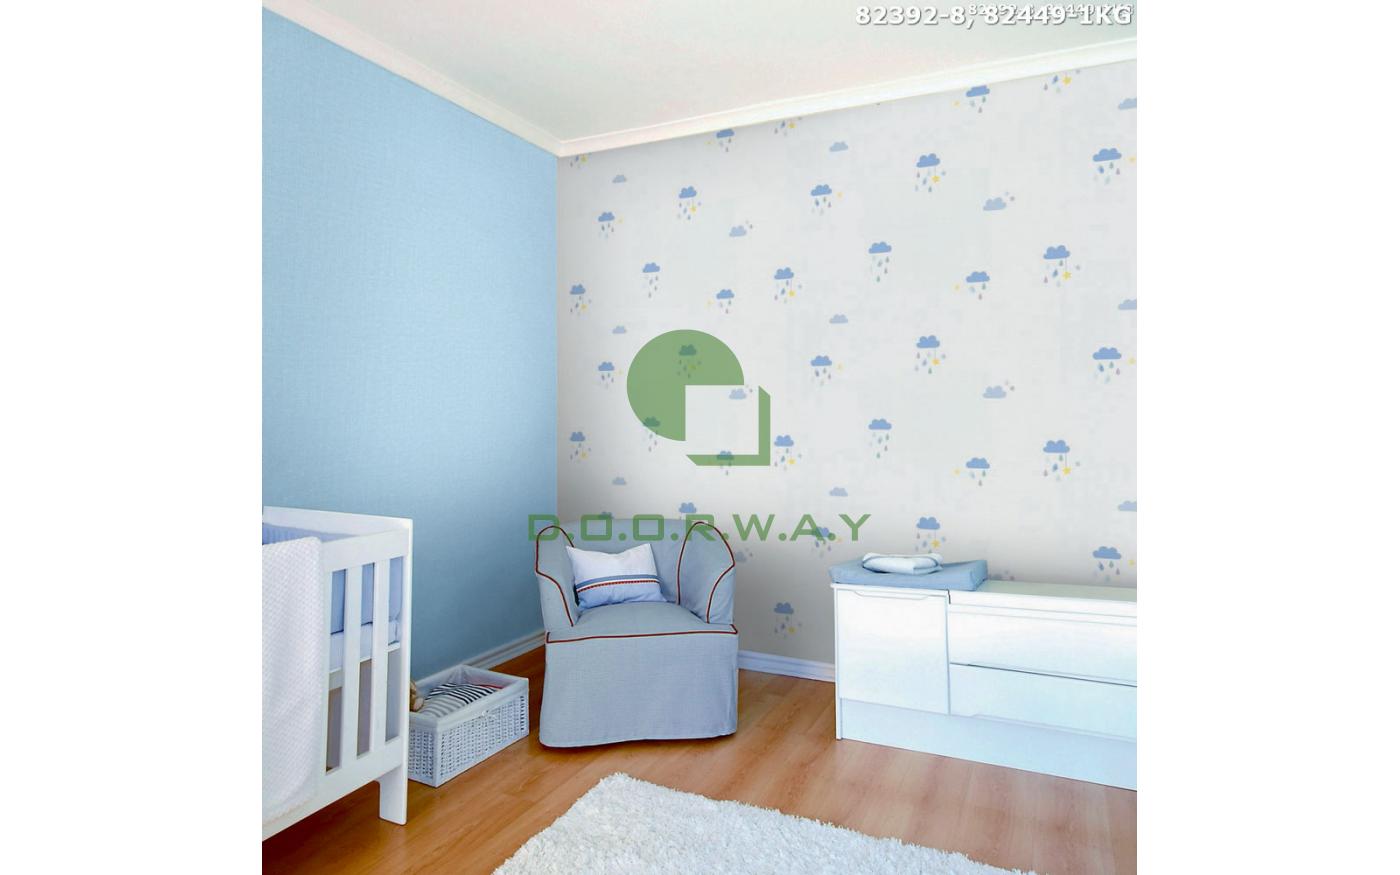 Các mẫu giấy dán tường xanh dương cho phòng khách, bếp, ngủ